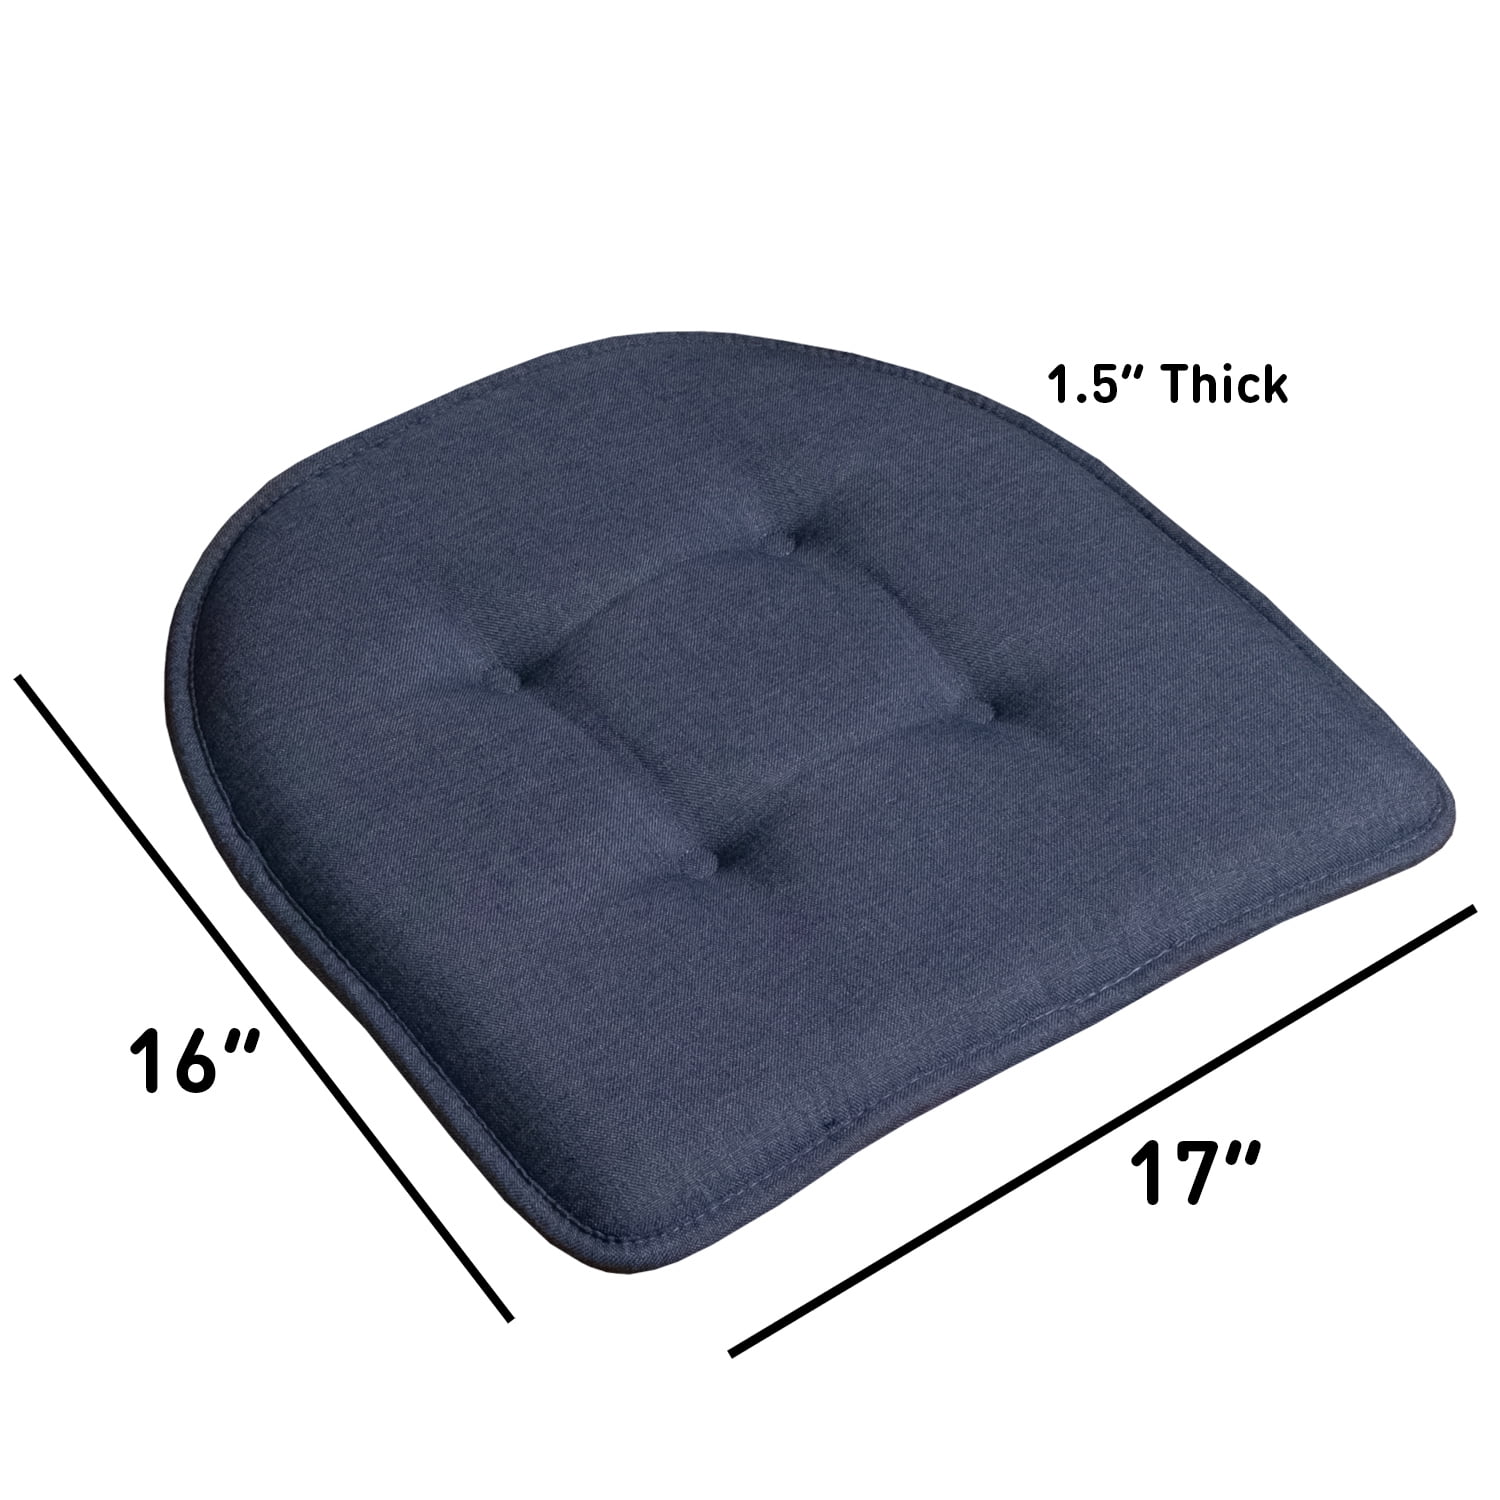 2 Gel/Foam Gel-U-Seat Cushion 16 x 16